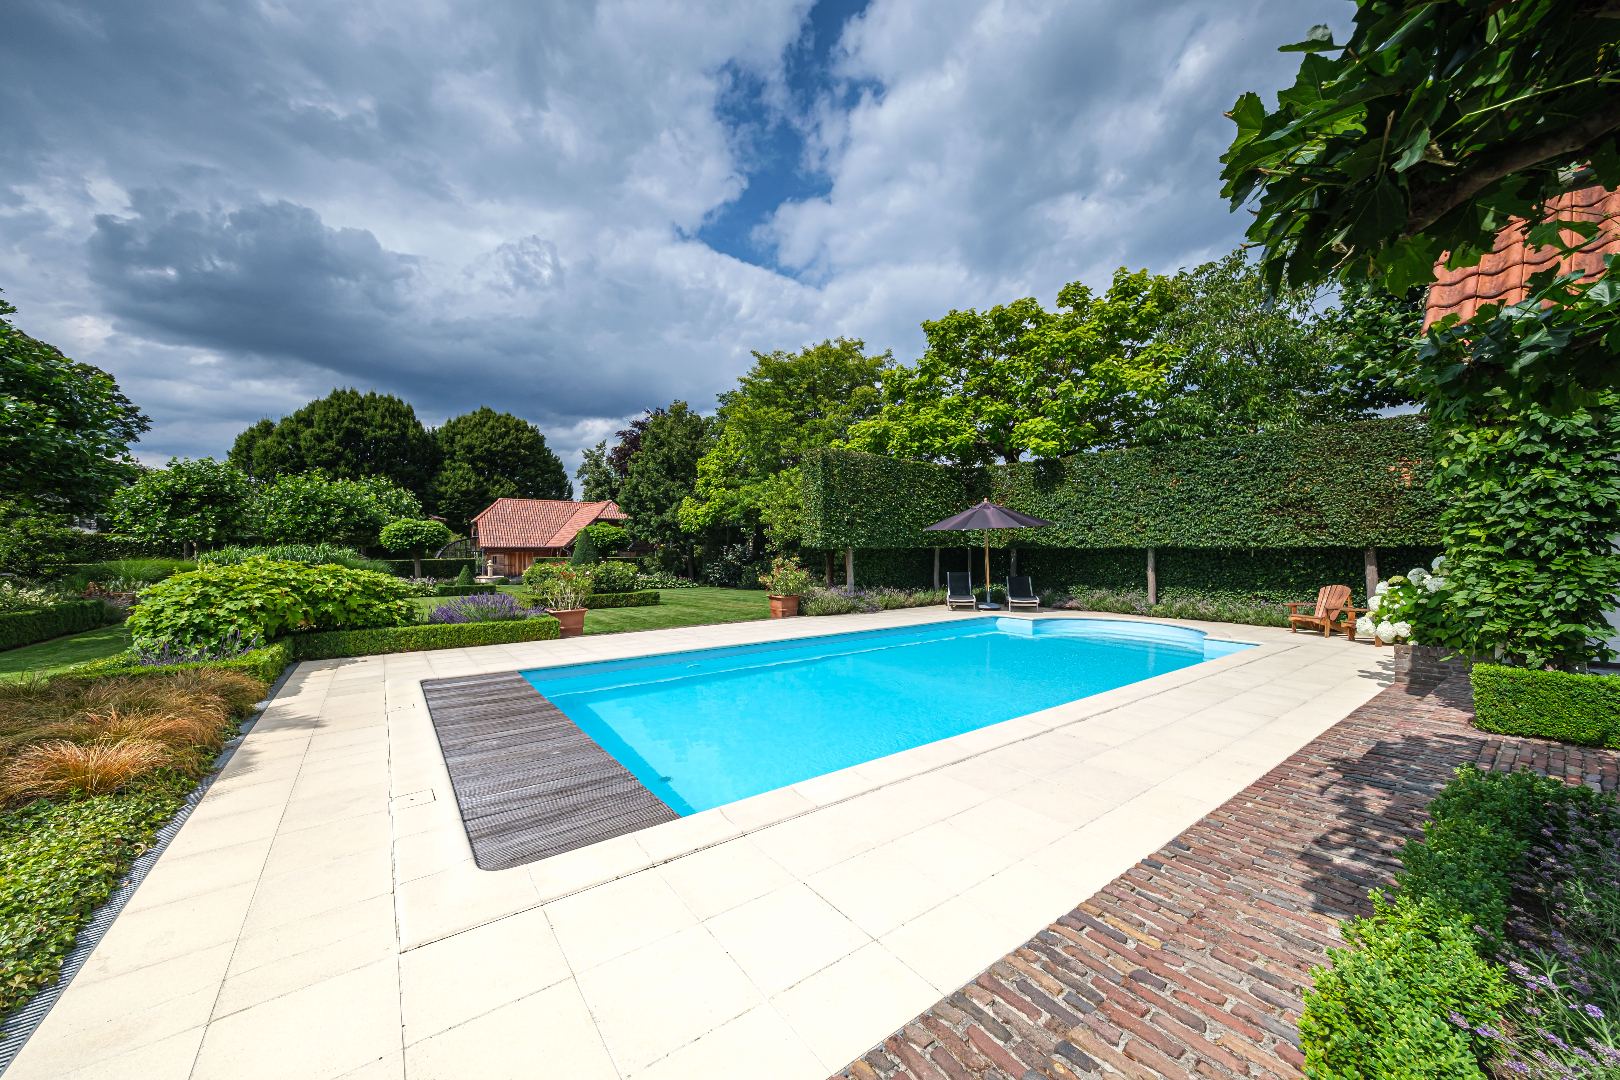 Luxueus ingericht landhuis met prachtige tuin met zwembad, poolhouse en ingericht houten bijgebouw 